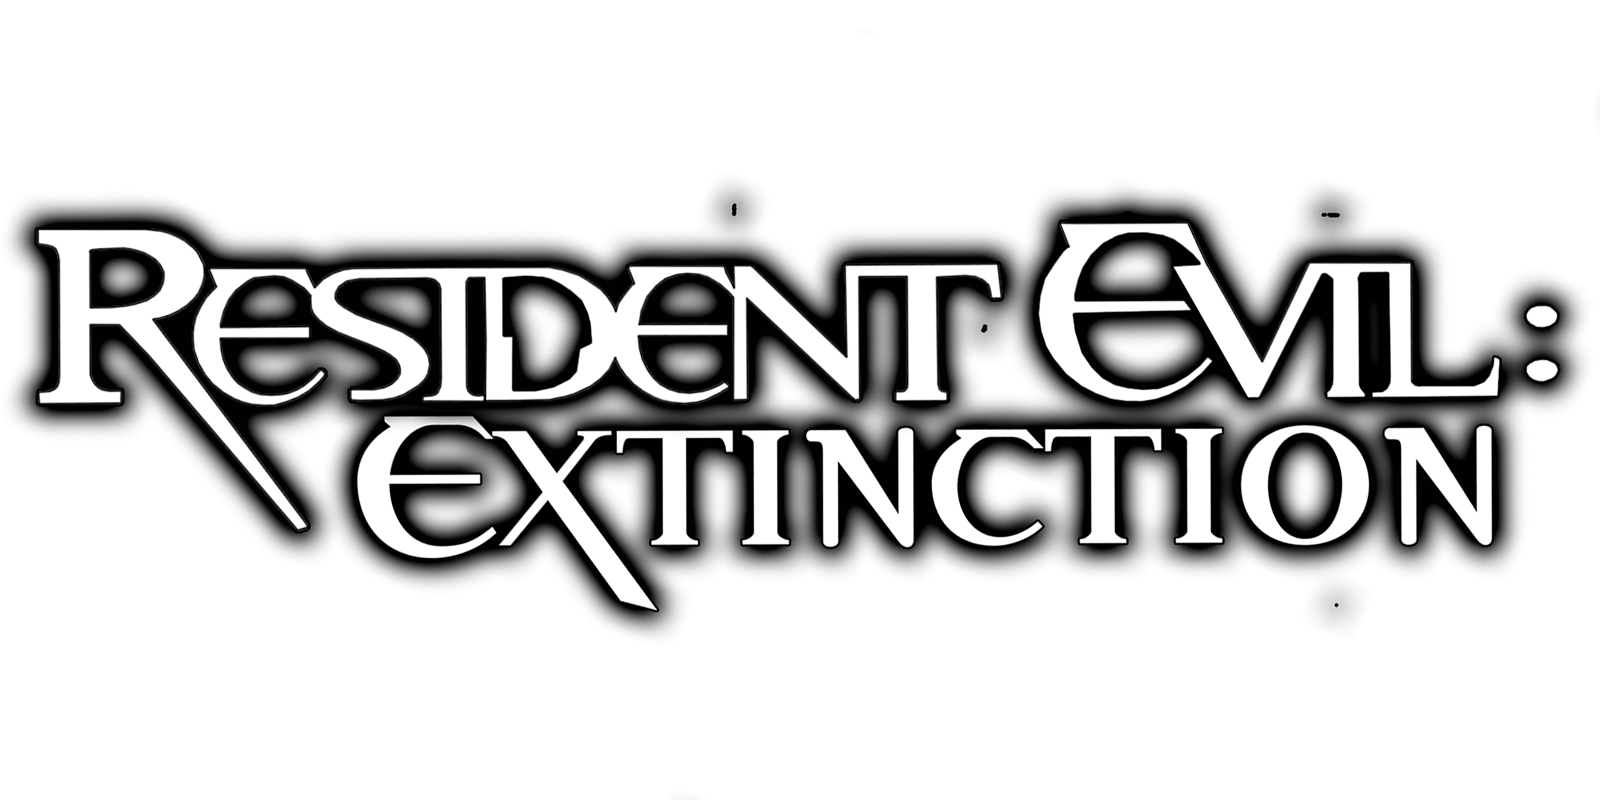 resident evil extinction full movie short story